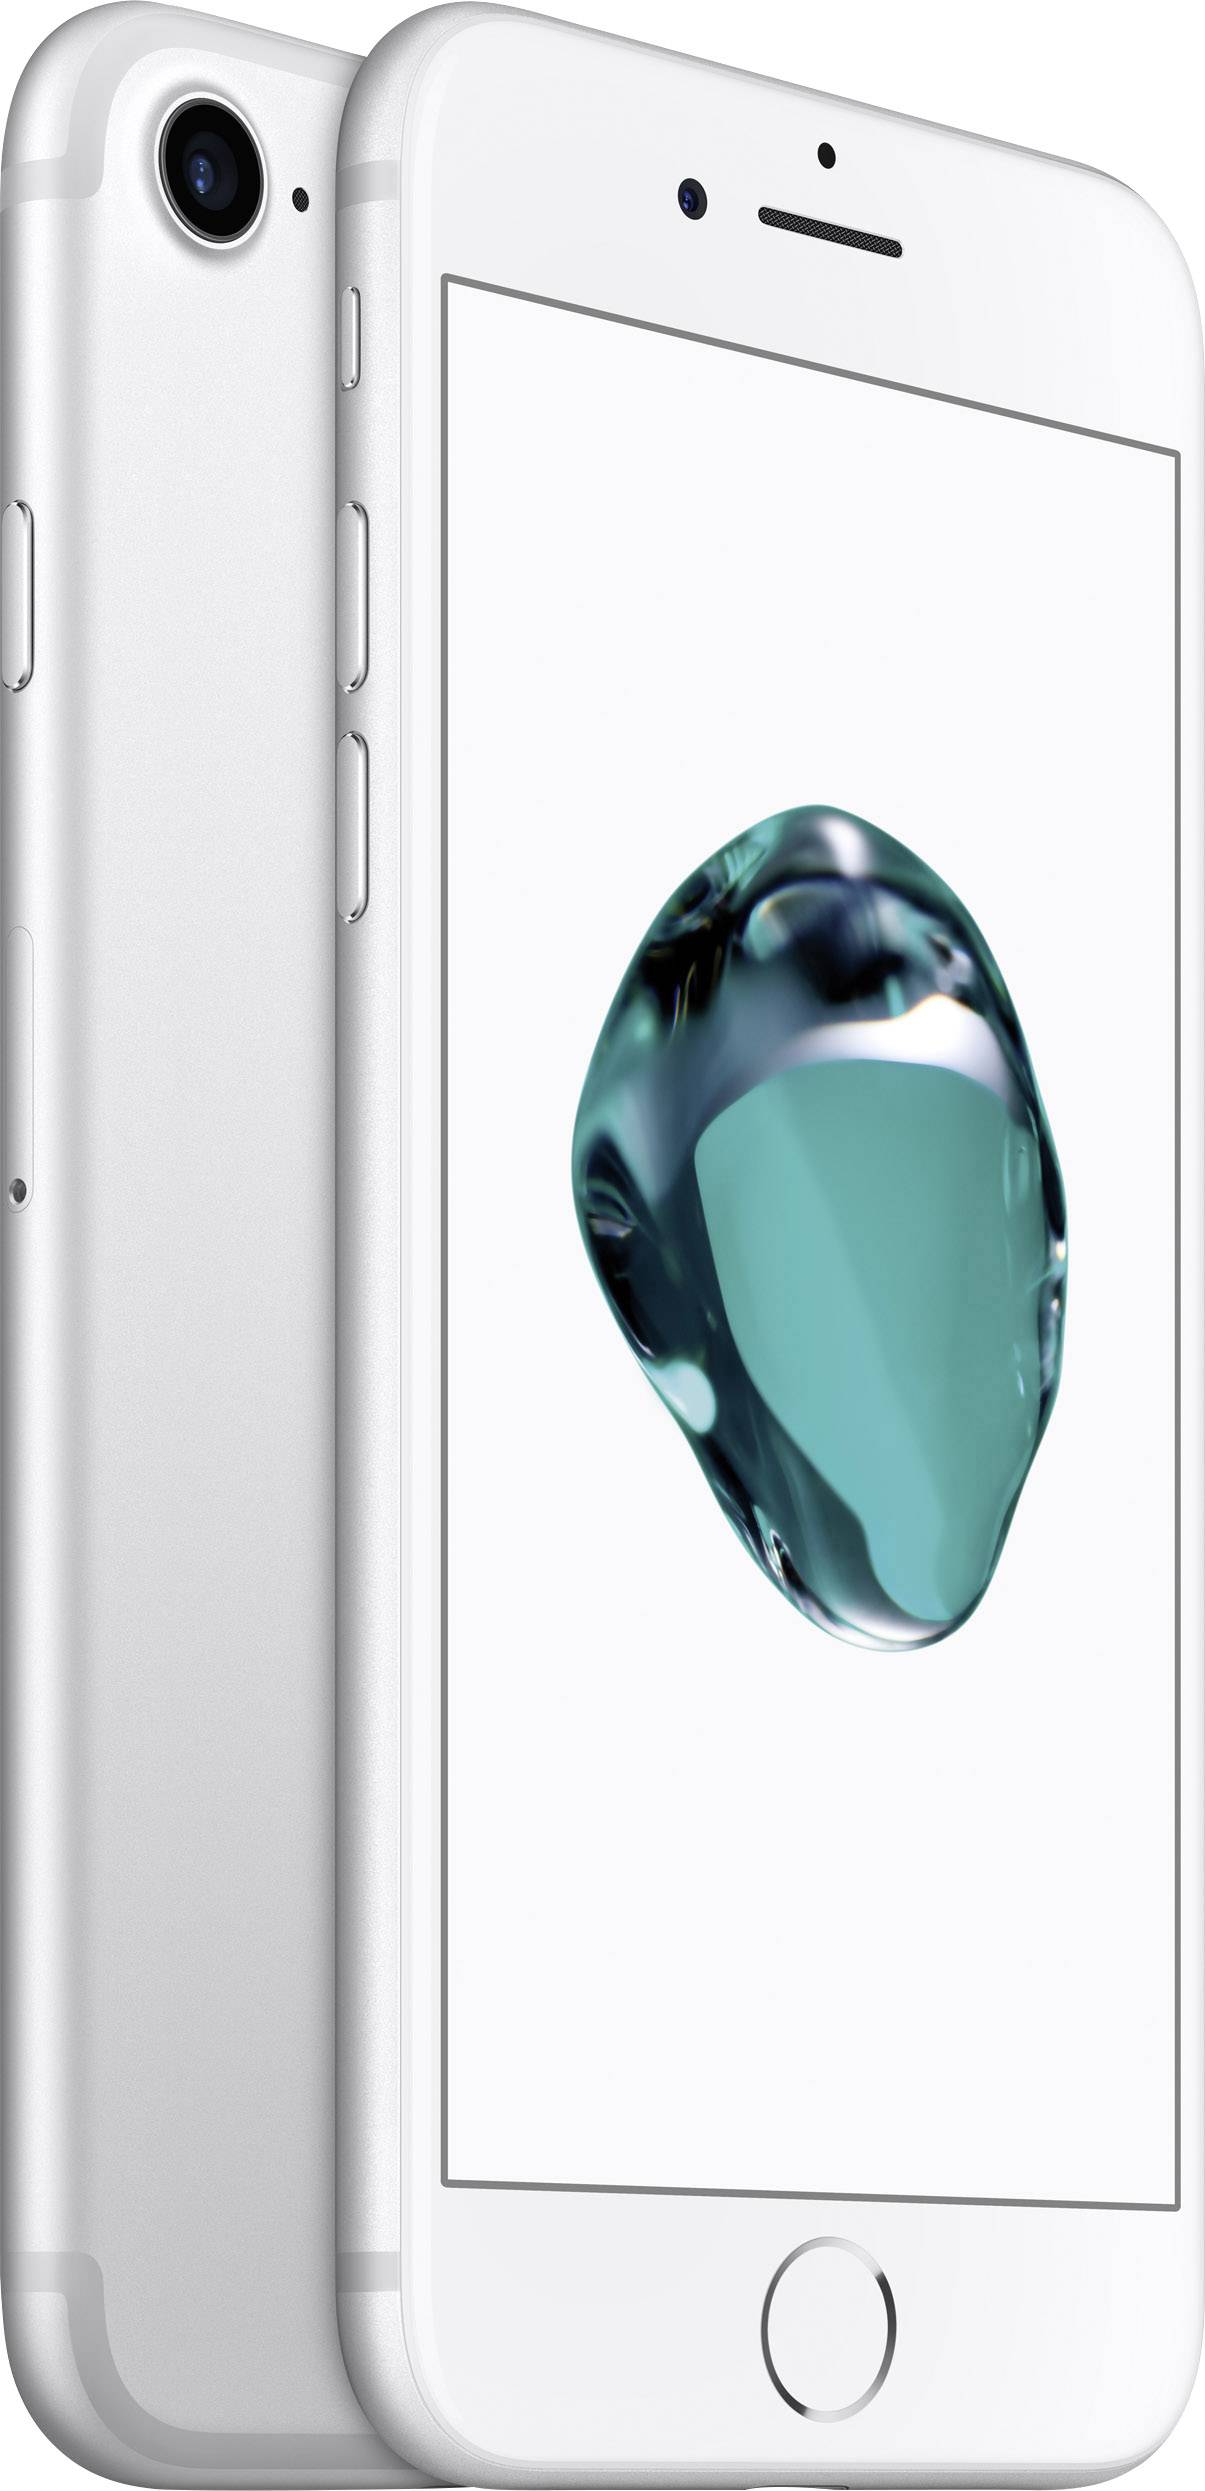 Zinloos Manuscript schetsen Apple iPhone 7 iPhone 32 GB 11.9 cm (4.7 inch) Silver iOS 10 | Conrad.com